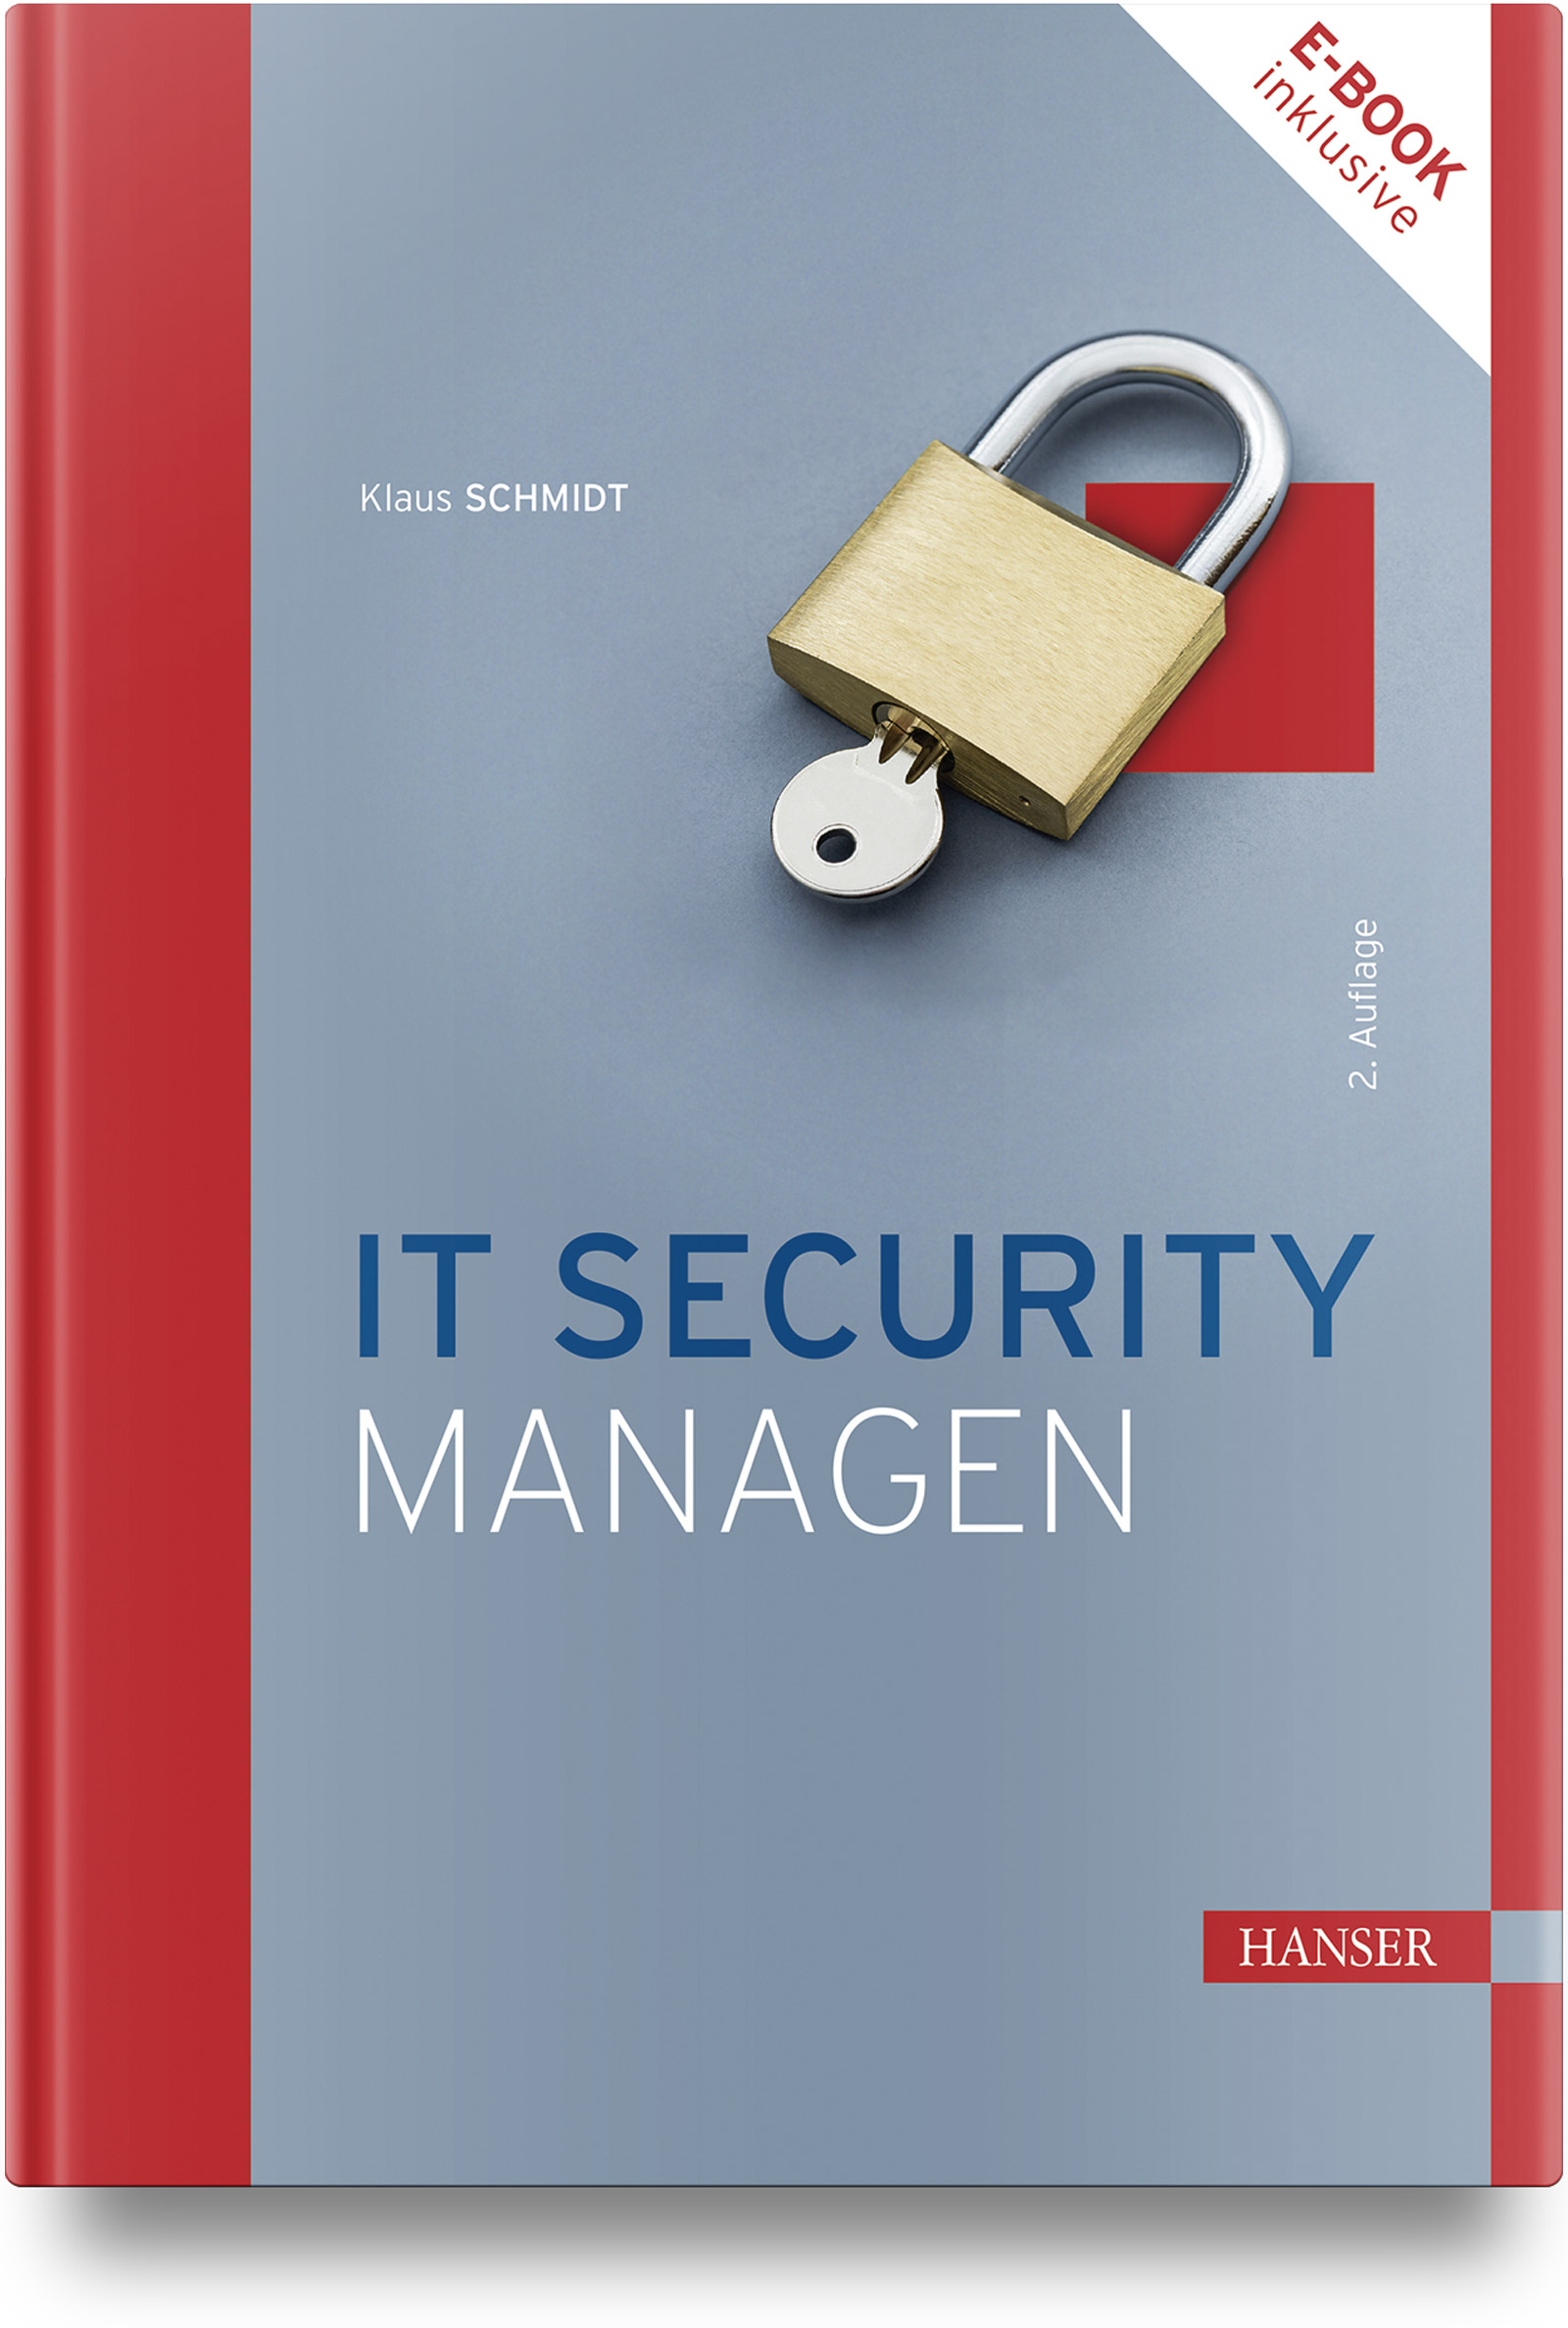 IT Security managen (2. Auflage)